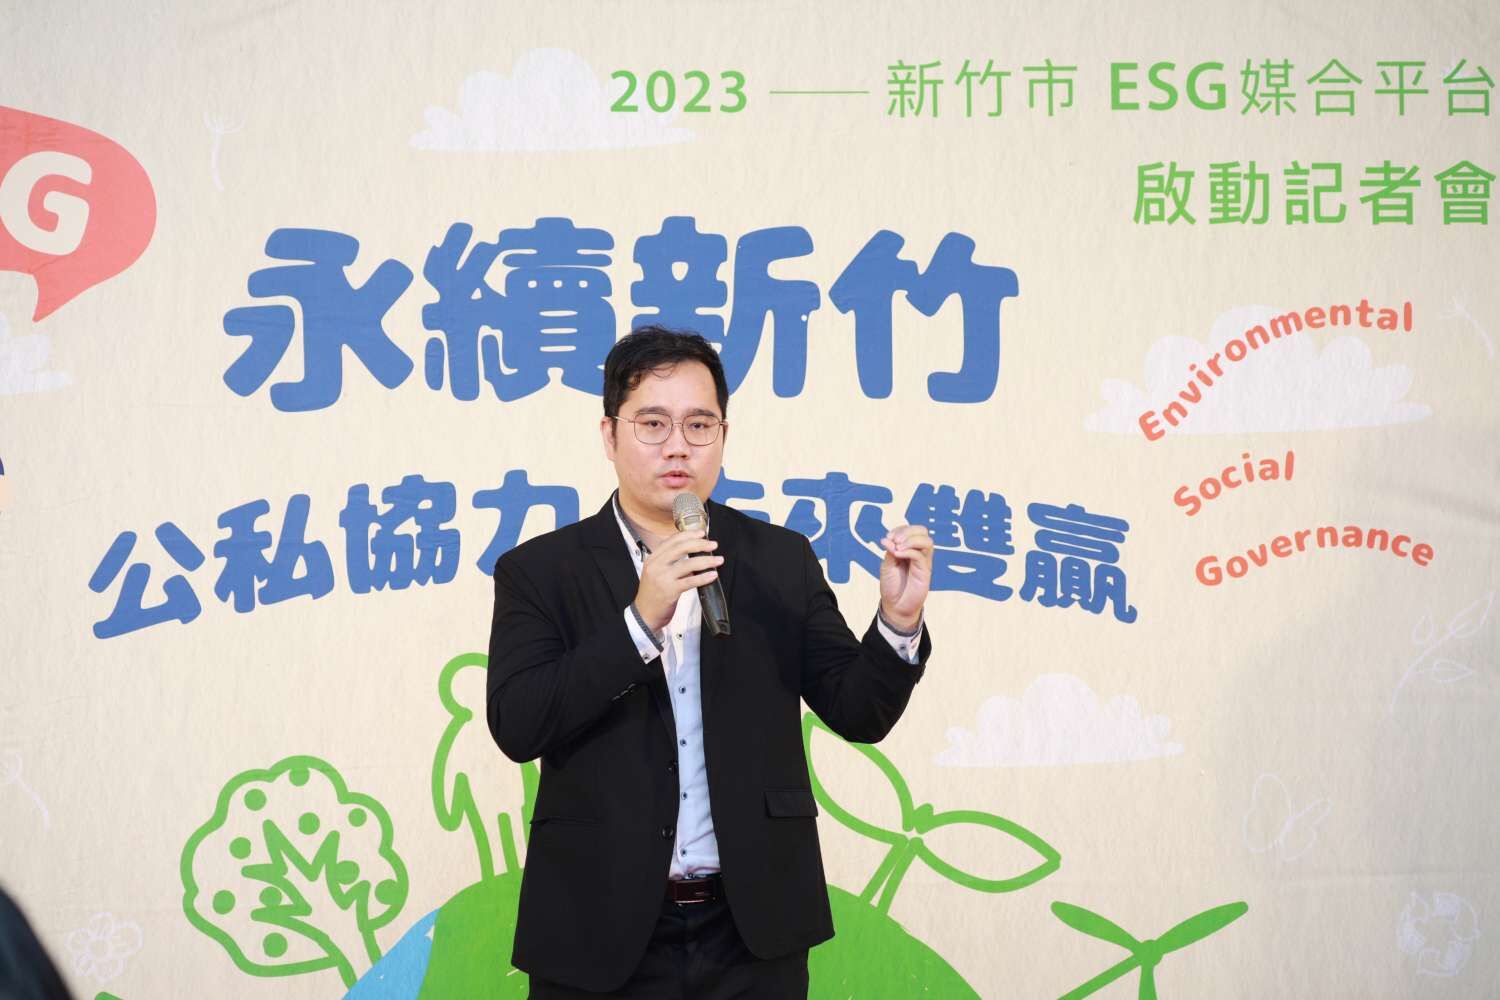 竹市全國首創ESG媒合平台　邀企業攜手打造「宜居永續」城市小圖共6張，pic4